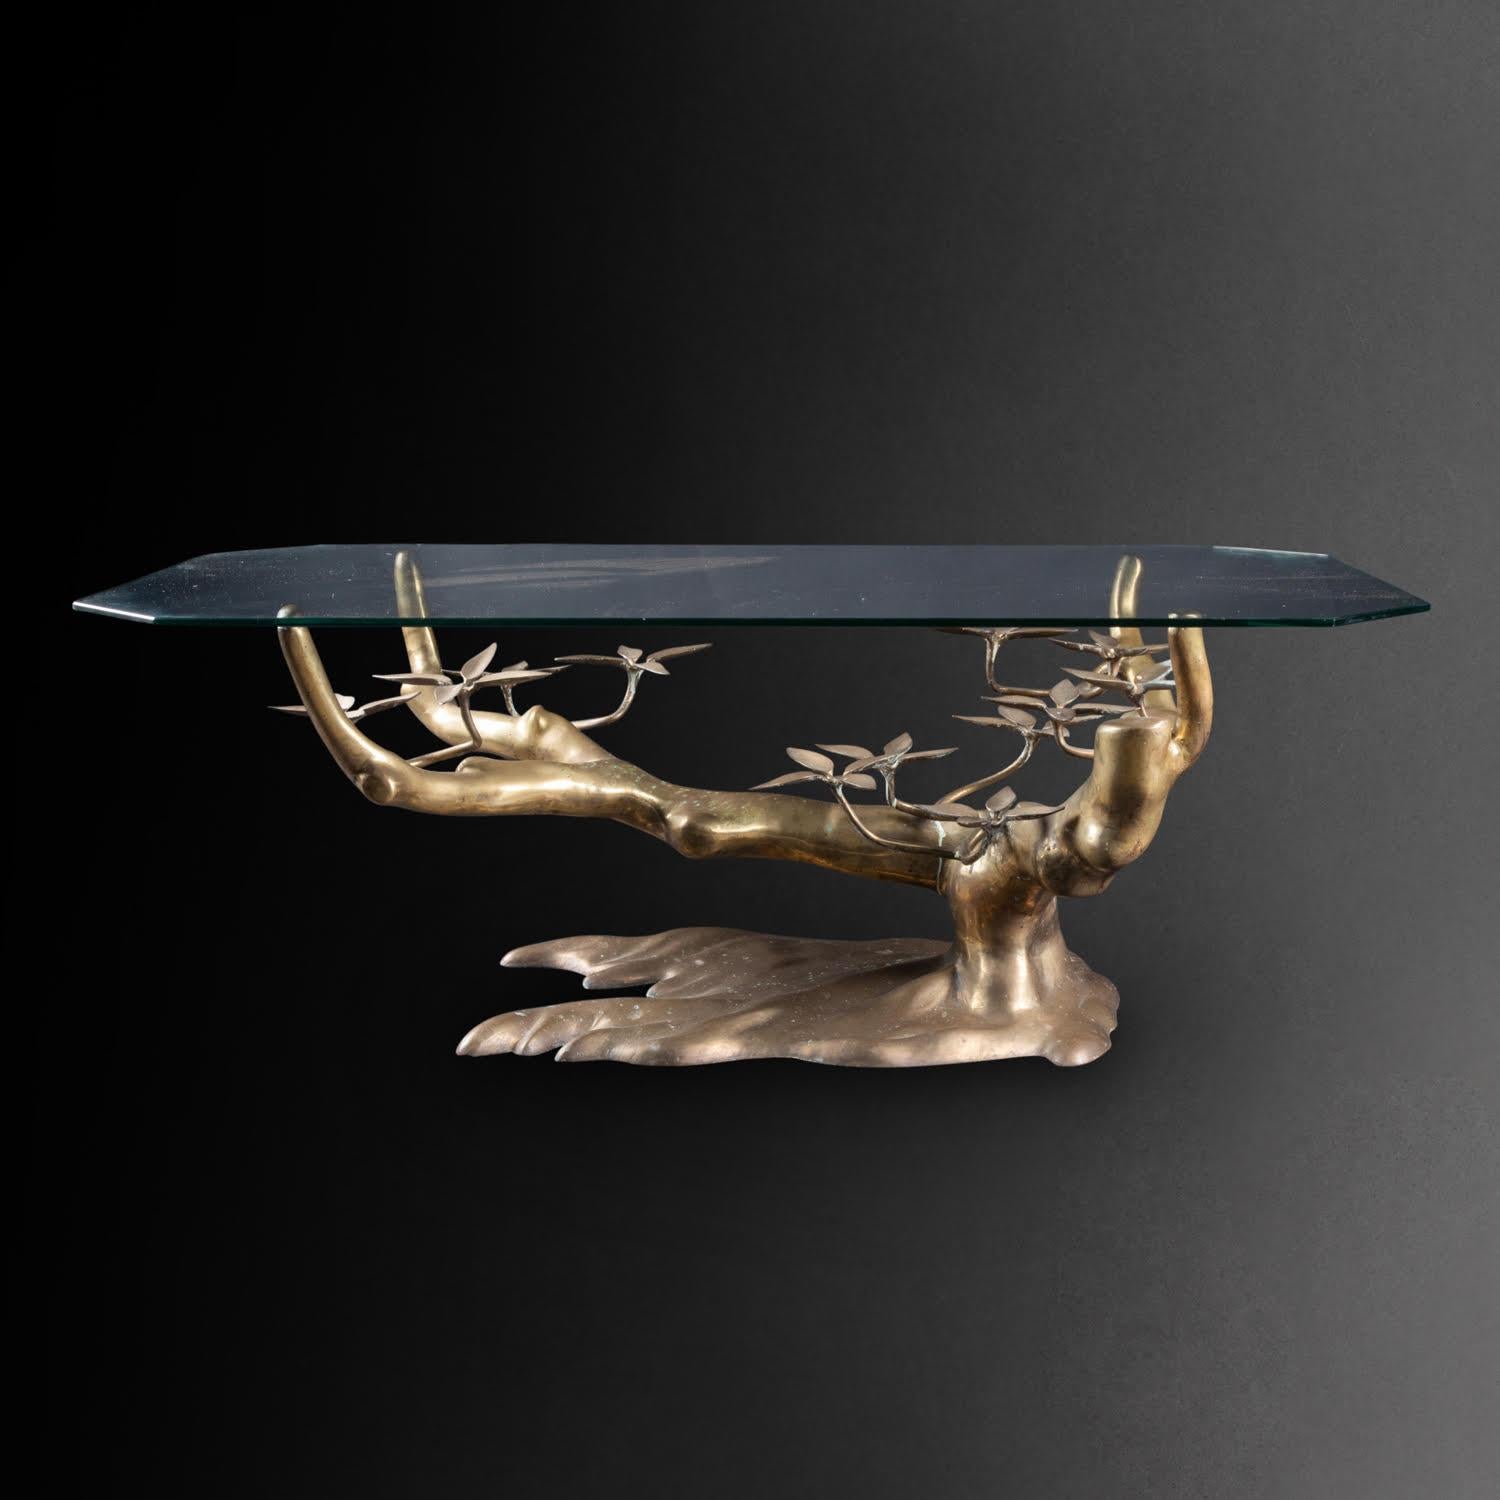 Couchtisch von Willi Daro, Bronze und Glasplatte, XX. Jahrhundert.

Couchtisch, inspiriert von einem Bonsai-Baum, Bronze und Glasplatte von Willi Daro, 20. Jahrhundert.  
H: 42,5cm , B: 115cm, T: 60cm